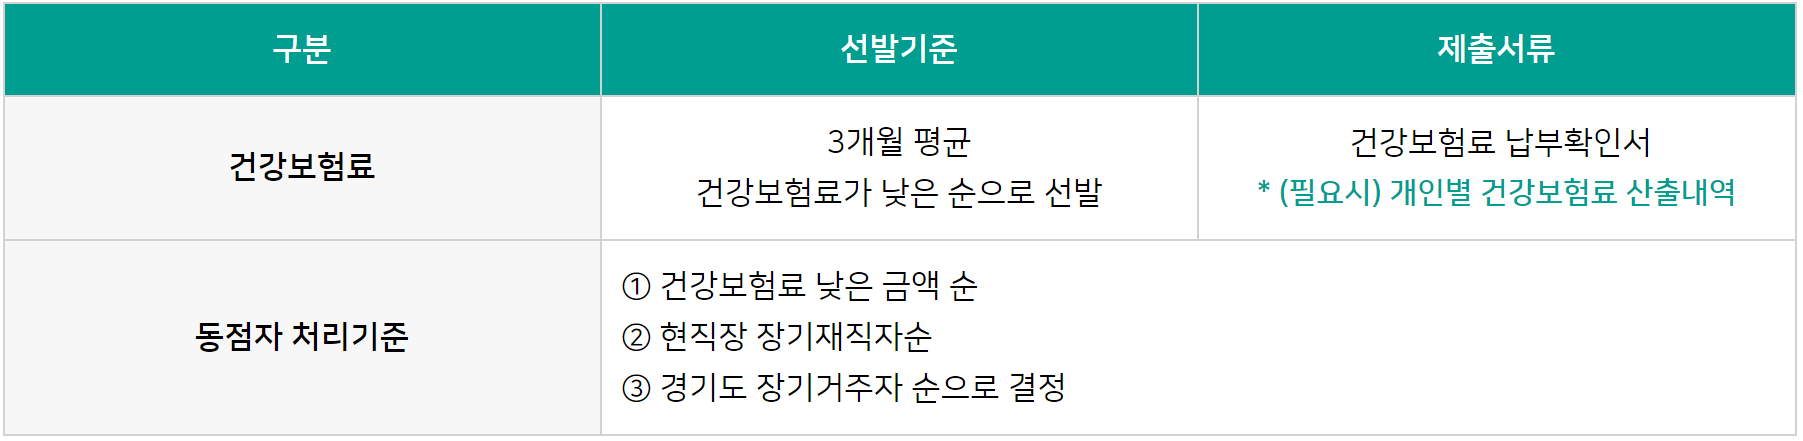 경기도 중소기업 청년 노동자 지원 선정 요건